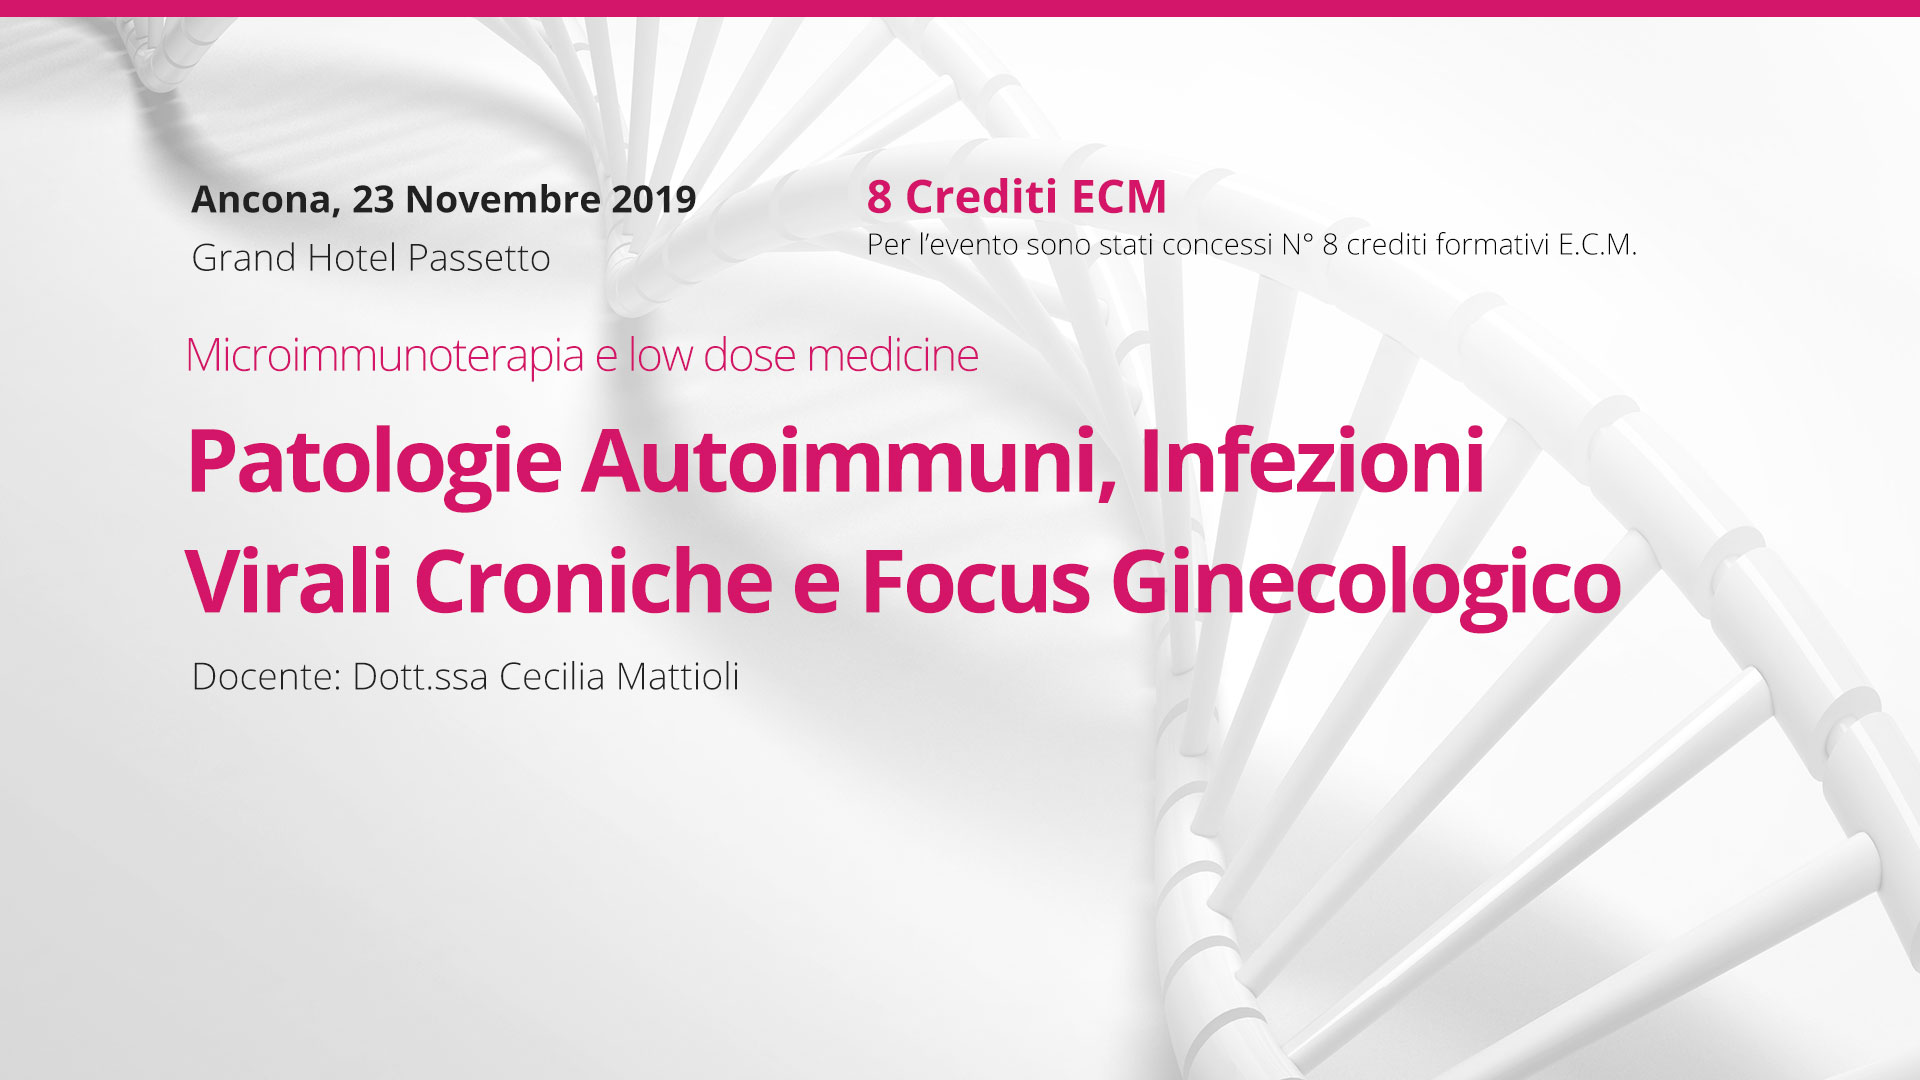 Patologie Autoimmuni, Infezioni Virali Croniche e focus ginecologico. Ancona, 23 Novembre 2019